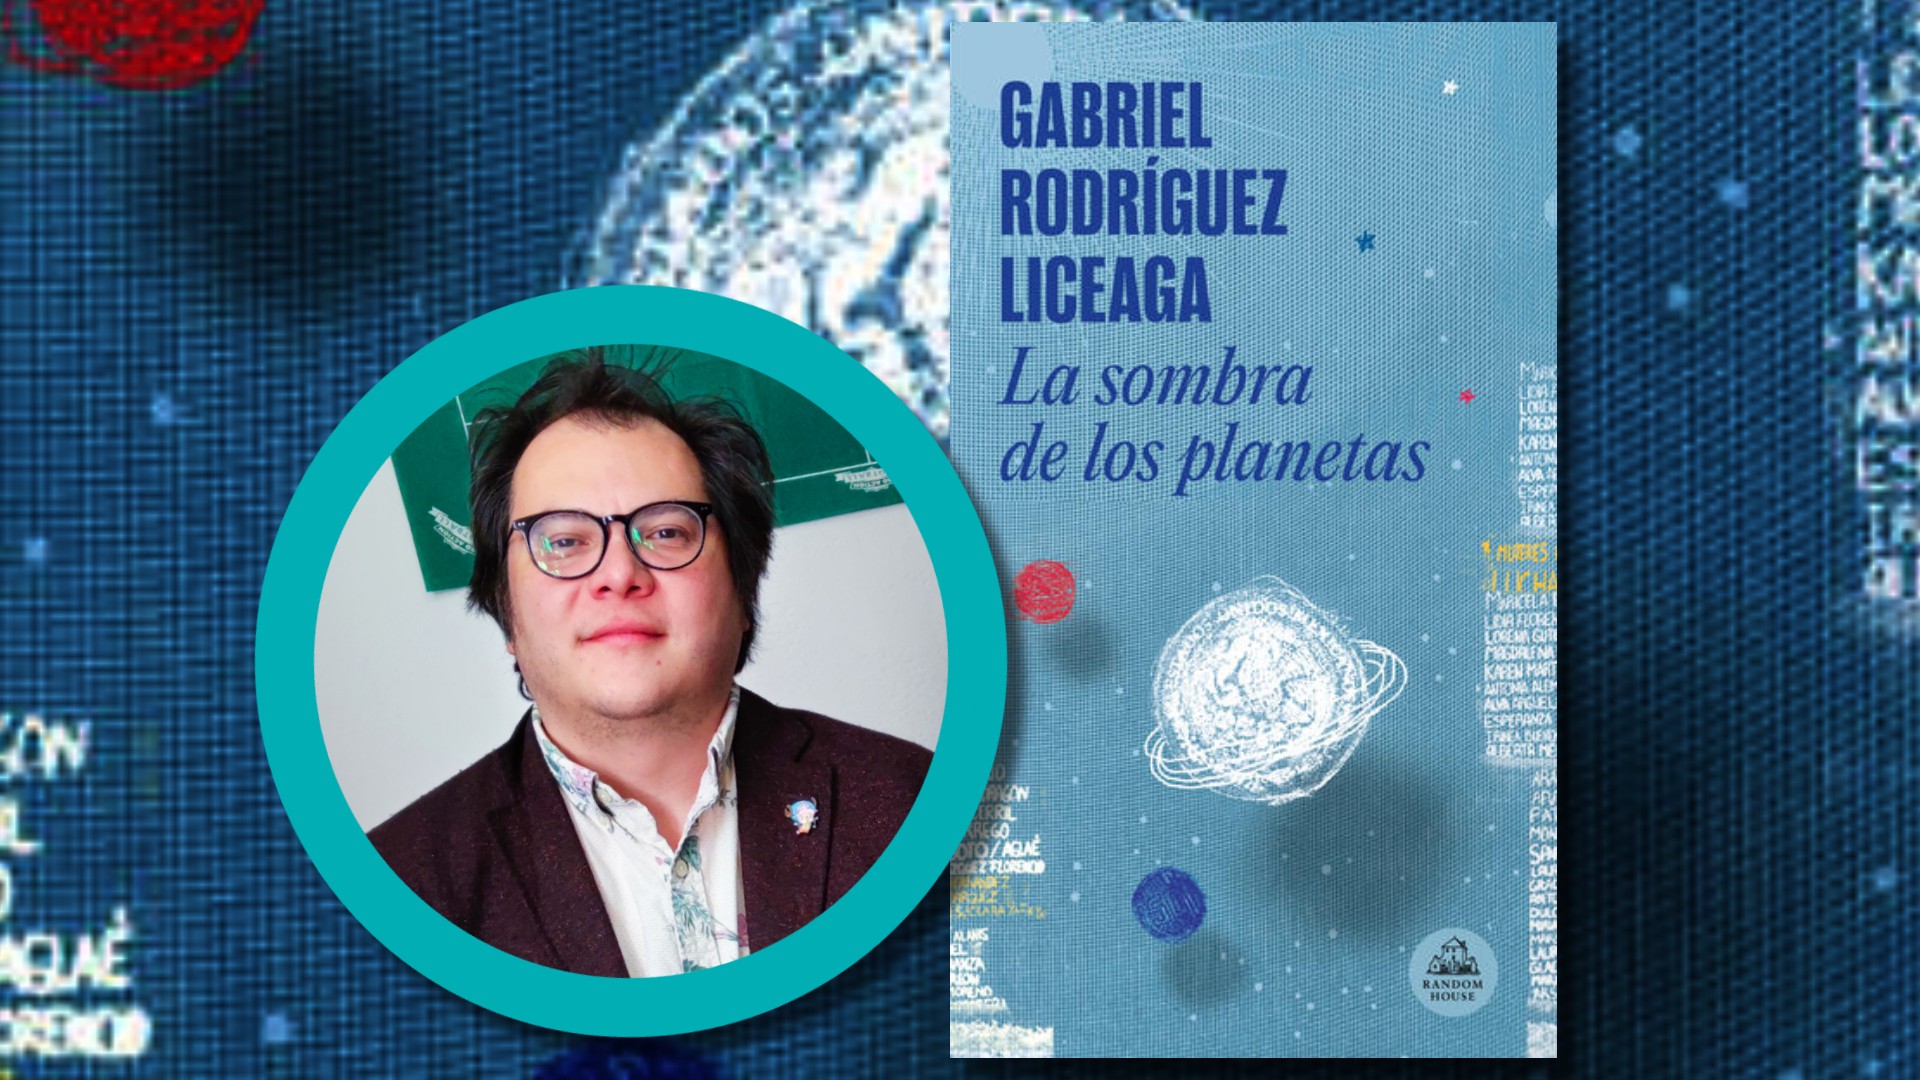 “Me gusta acceder a la sabiduría a partir de la carcajada”: Gabriel Rodríguez Liceaga sobre su novela “La sombra de los planetas”